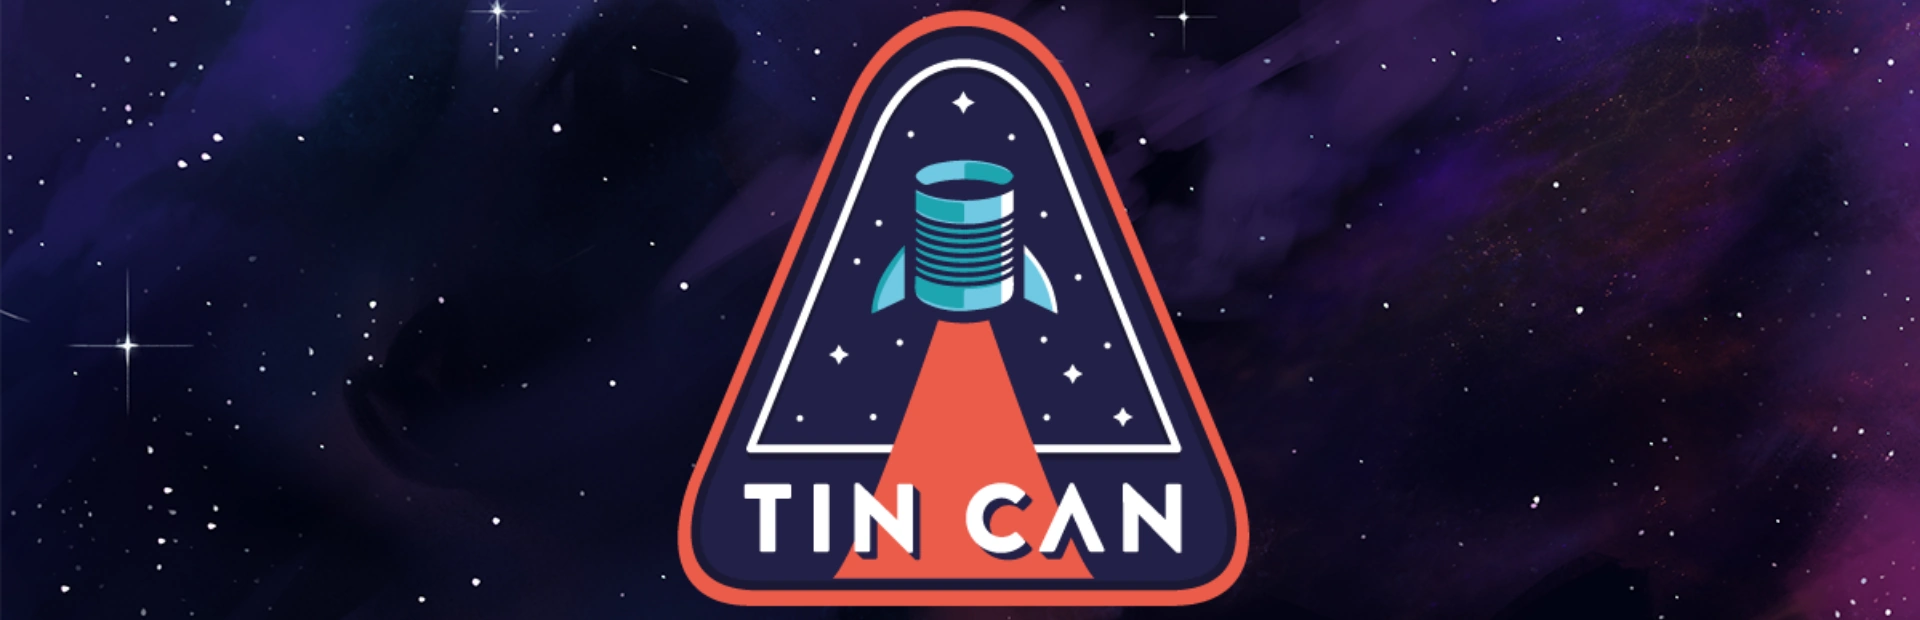 دانلود بازی Tin Can برای کامپیوتر | گیمباتو